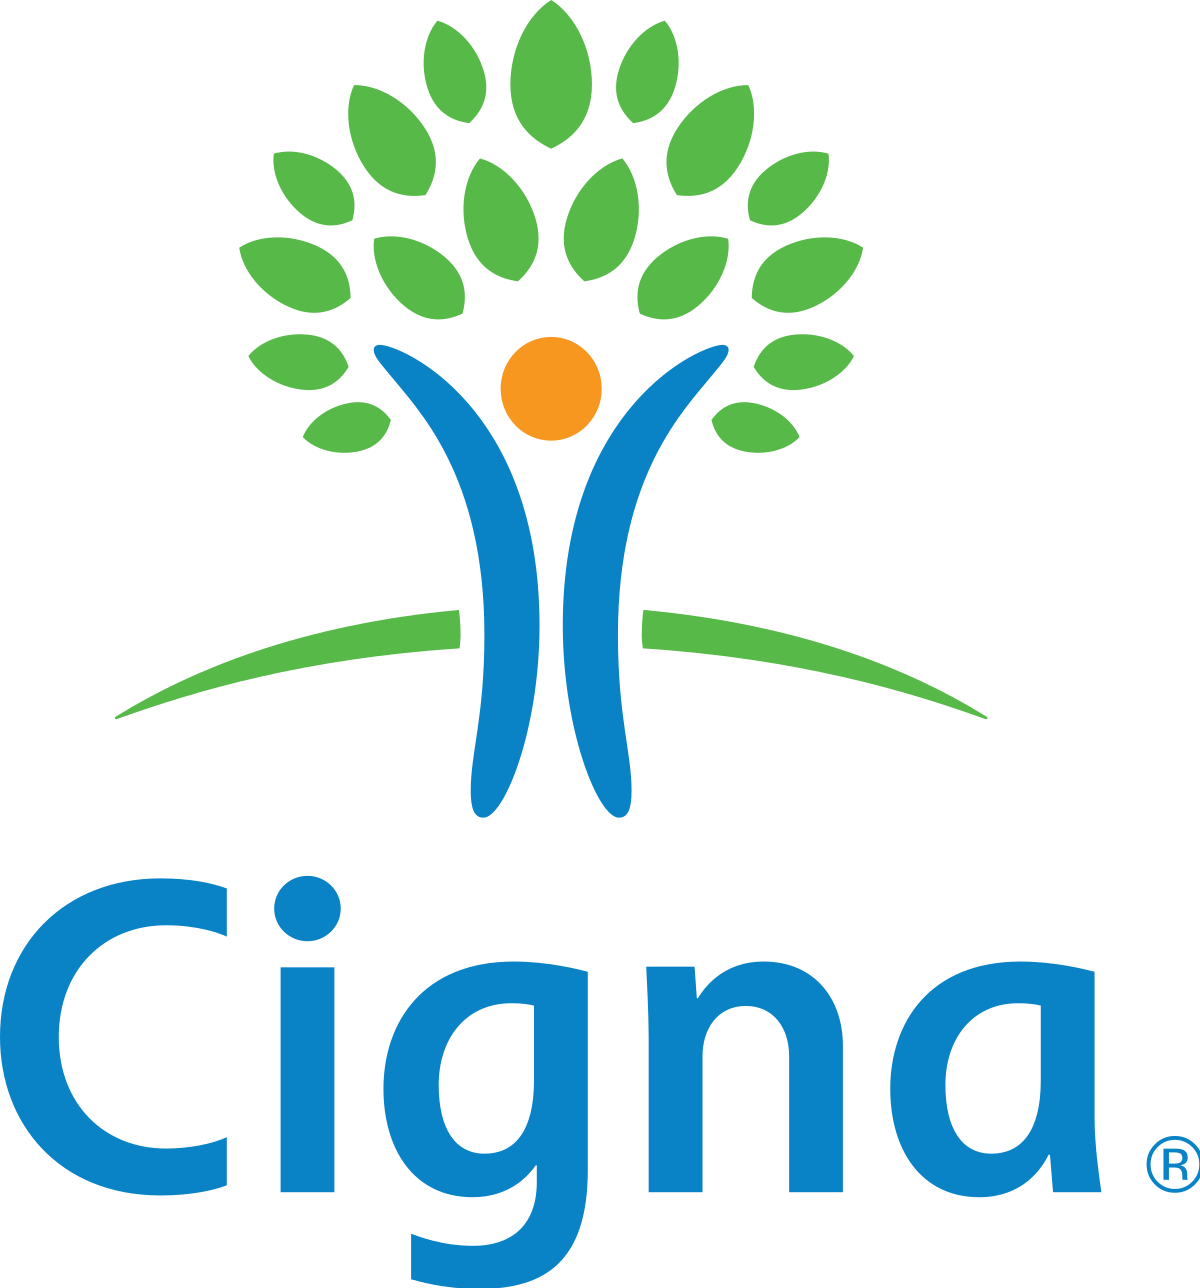 Logo for Cigna.